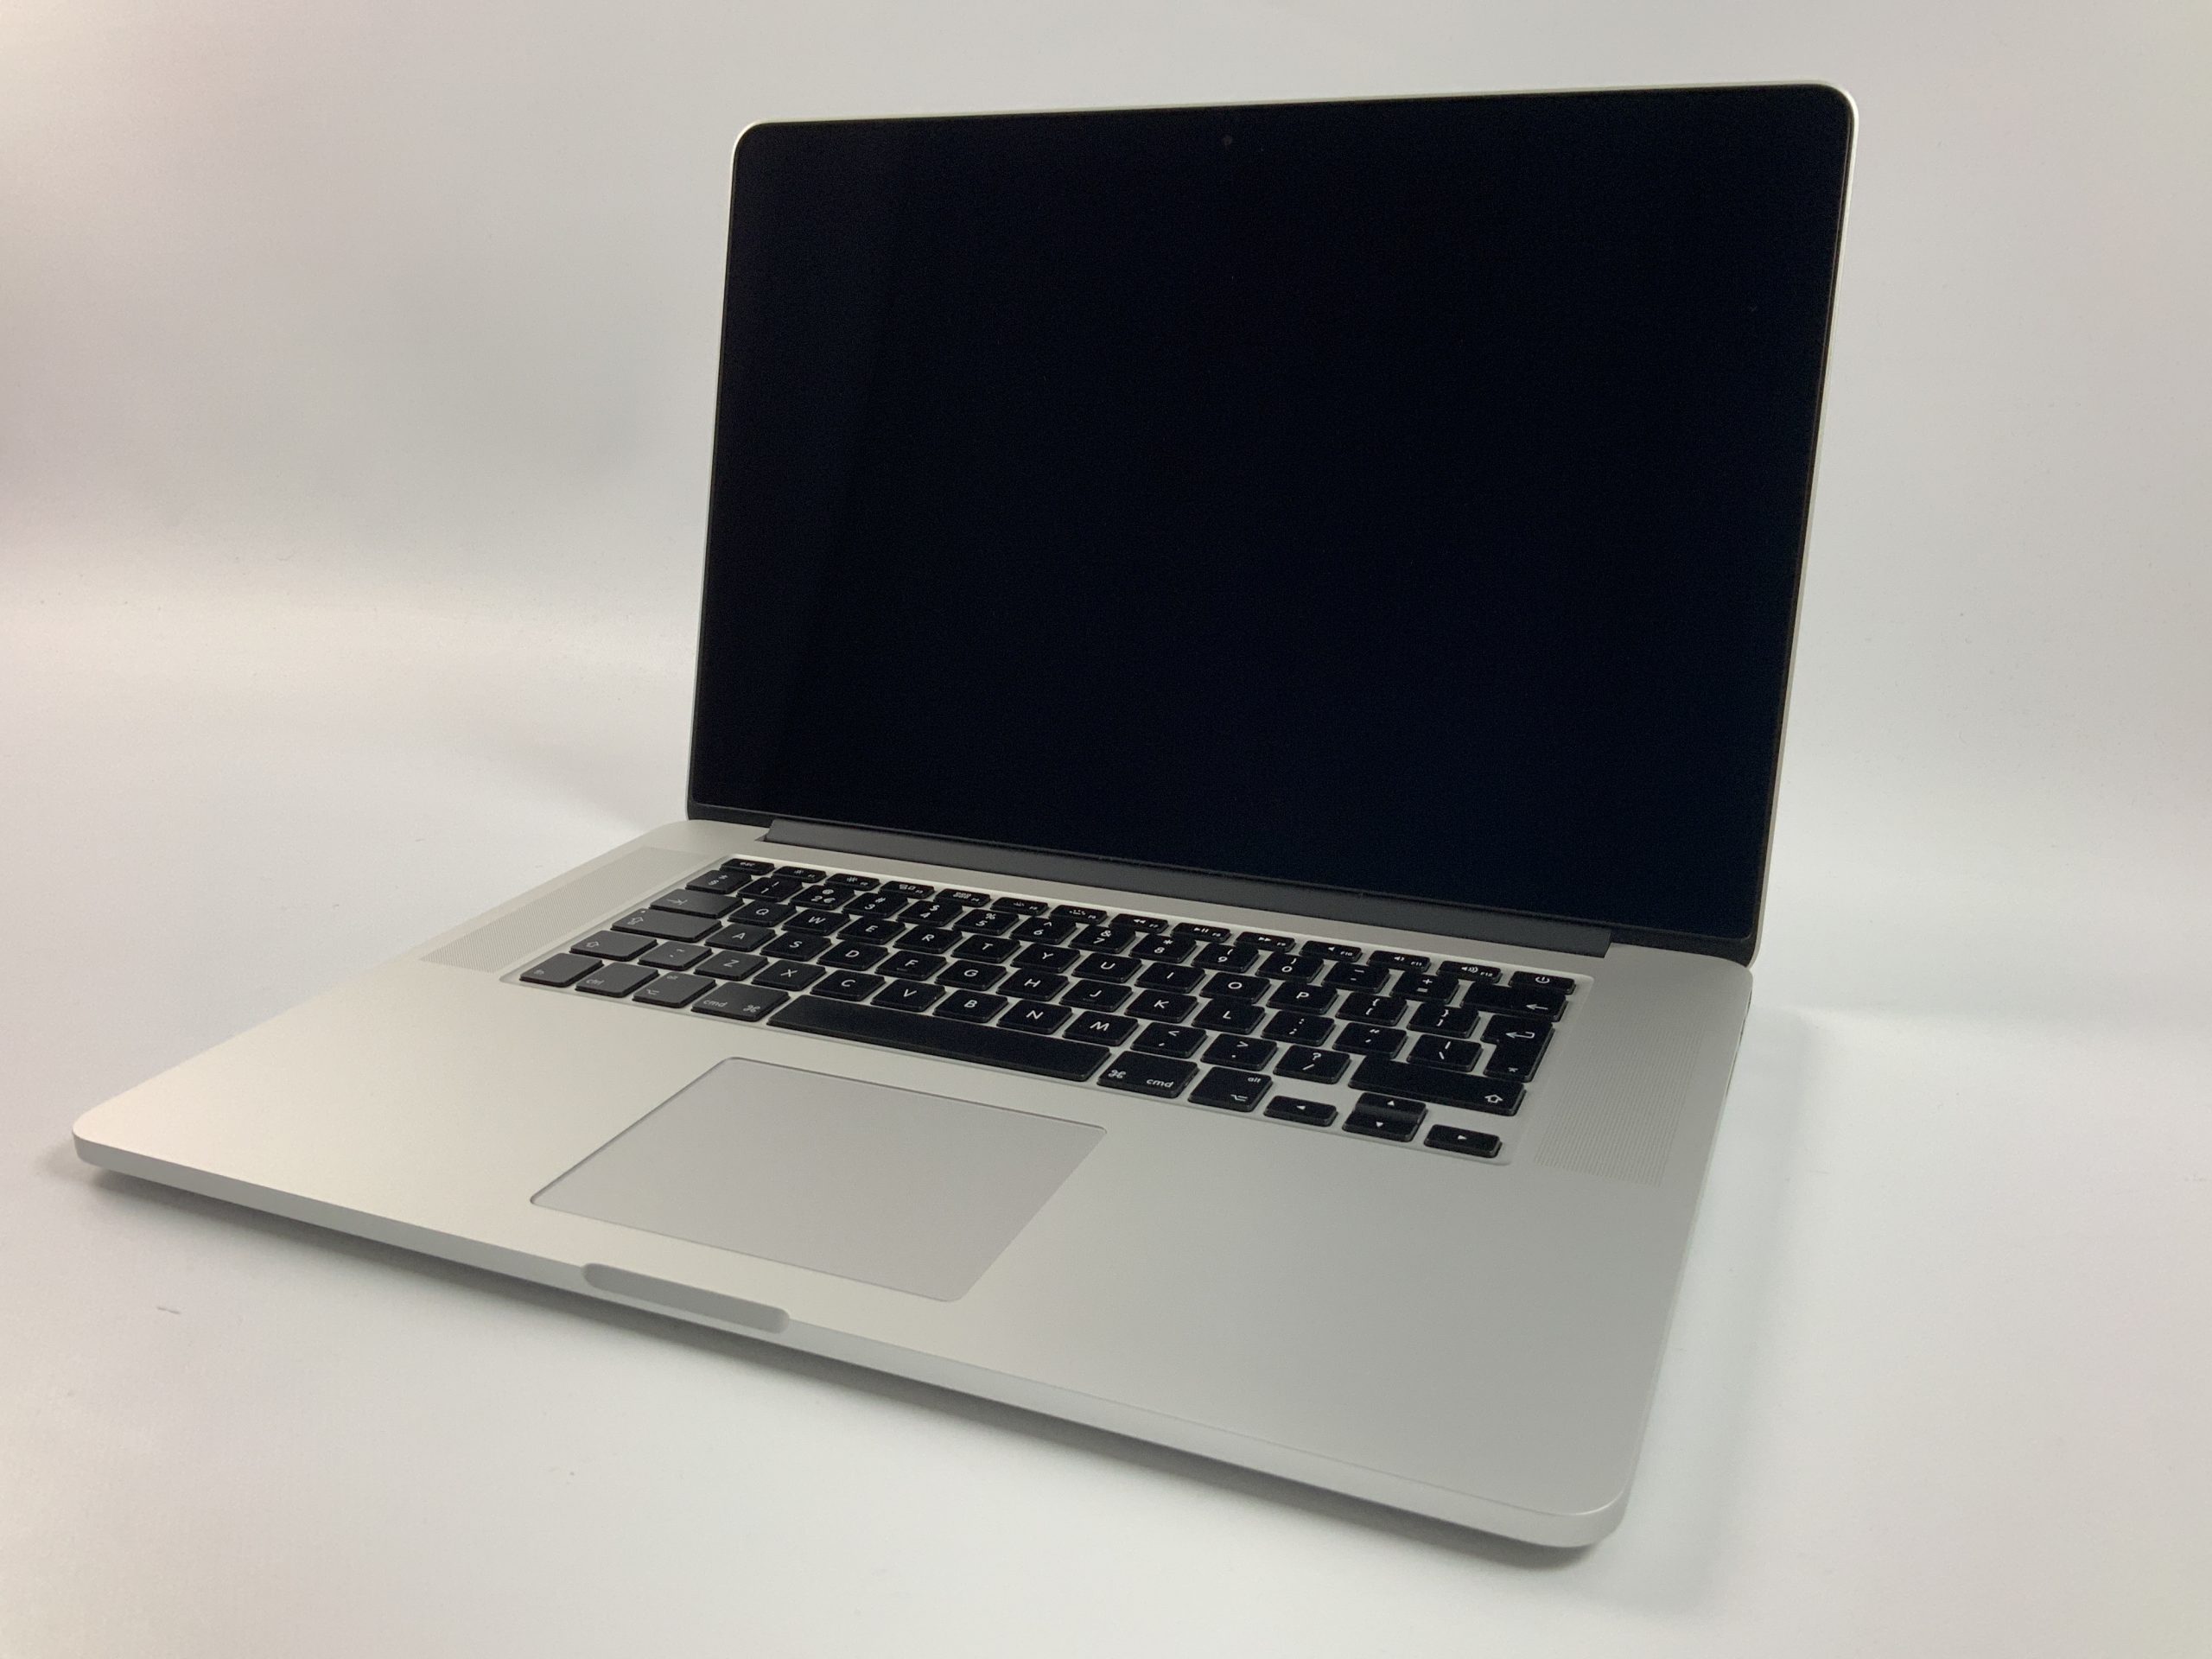 MacBook Pro Retina 15" Mid 2015 (Intel Quad-Core i7 2.5 GHz 16 GB RAM 512 GB SSD), Intel Quad-Core i7 2.5 GHz, 16 GB RAM, 512 GB SSD, Afbeelding 1